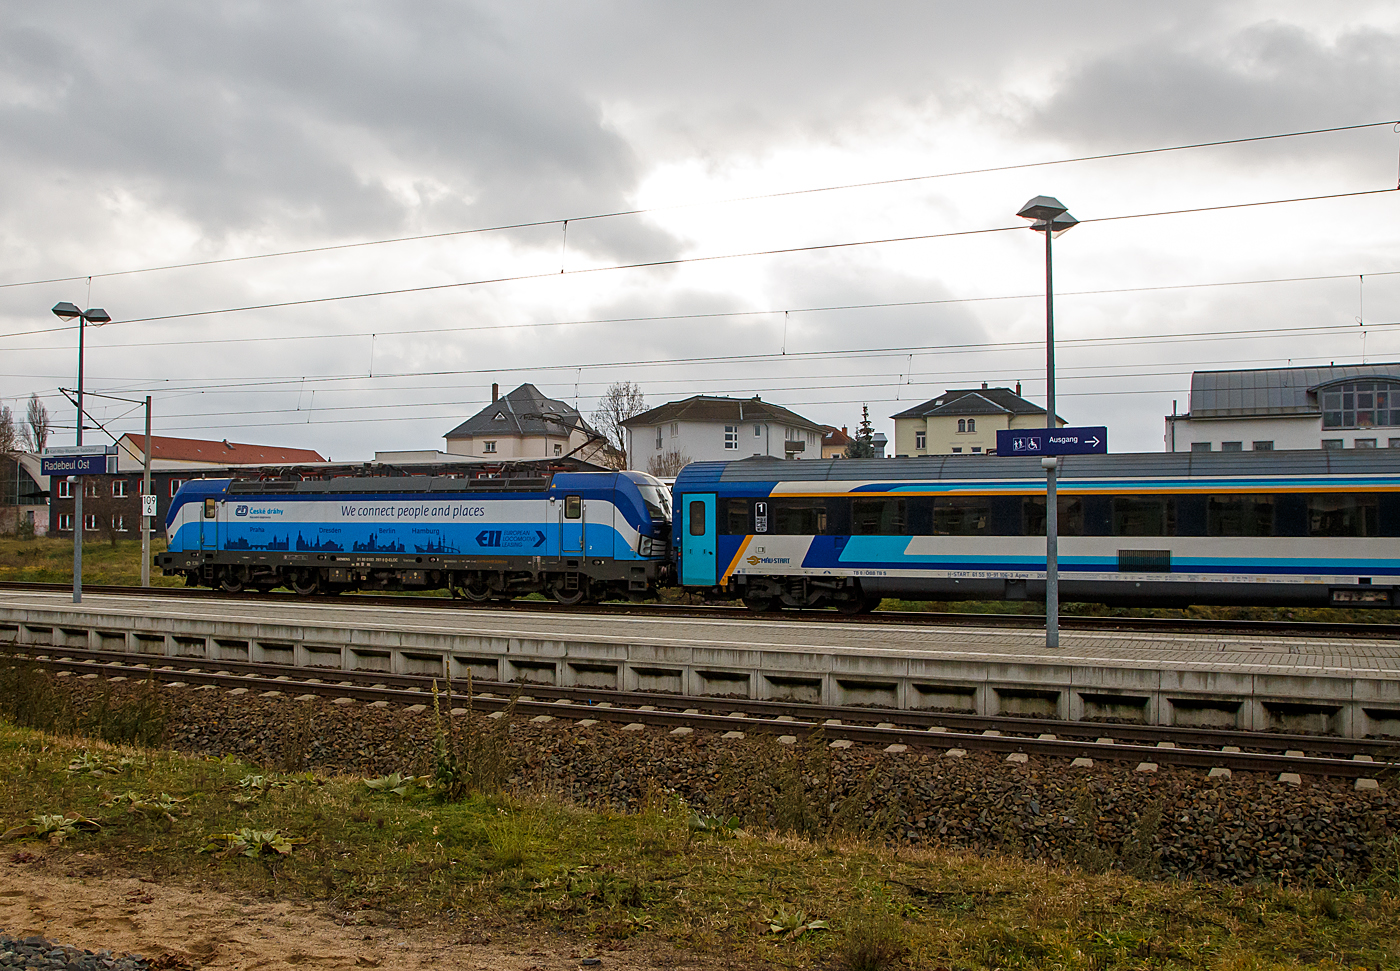 Die an die ČD - České dráhy a.s. (Praha / Prag) vermietete Siemens Vectron MS 193 297-9  Seppl  (91 80 6193 297-9 D-ELOC) der ELL - European Locomotive Leasing (Wien) rauscht am 07.12.2022, mit dem ungarischen MÁV-START EC 253 (Hamburg-Altona – Dresden – Prag - Bratislava - Budapest-Nyugati), durch Radebeul Ost in Richtung Dresden. 

Die Siemens Vectron MS wurde 2017 von Siemens Mobilitiy in München-Allach unter der Fabriknummer 22235 gebaut und an die ELL geliefert. Die Vectron MS mit einer Leistung von 6.4 MW ist für 200 km/h, 
in Deutschland, Österreich, Ungarn, Polen, Tschechien, Slowakei und Rumänien (D/A/H/PL/CZ/SK/RO) zugelassen.